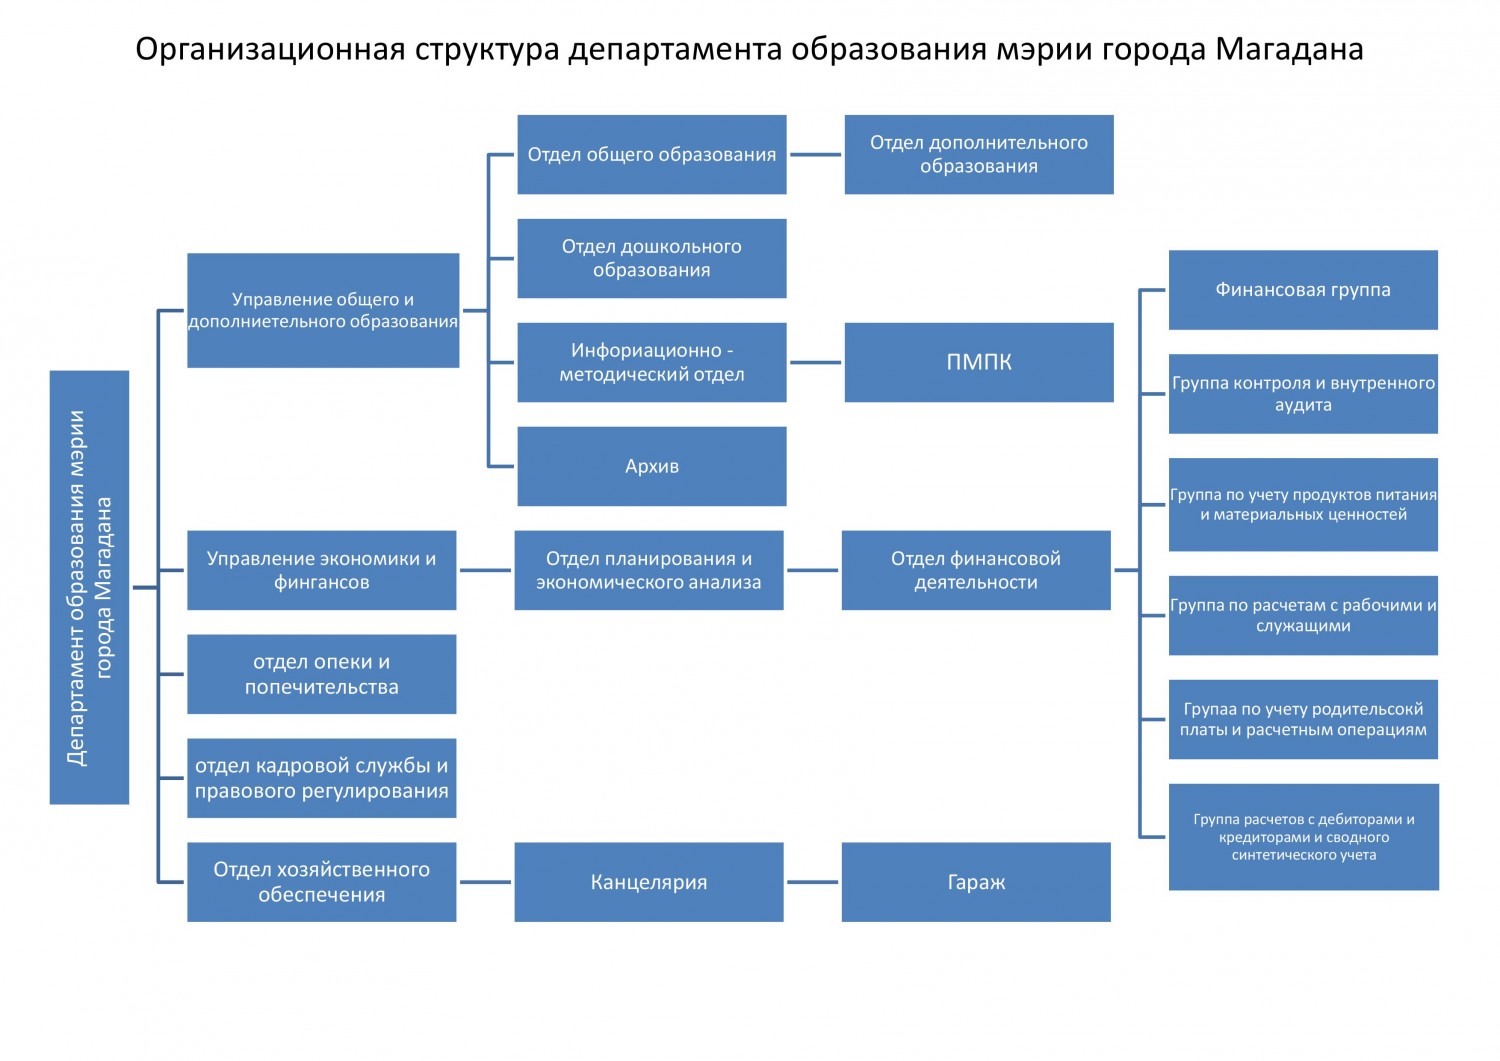 Сайт департамента образования нижнего. Структура департамента образования Москвы. Структура мэрии города Магадана.